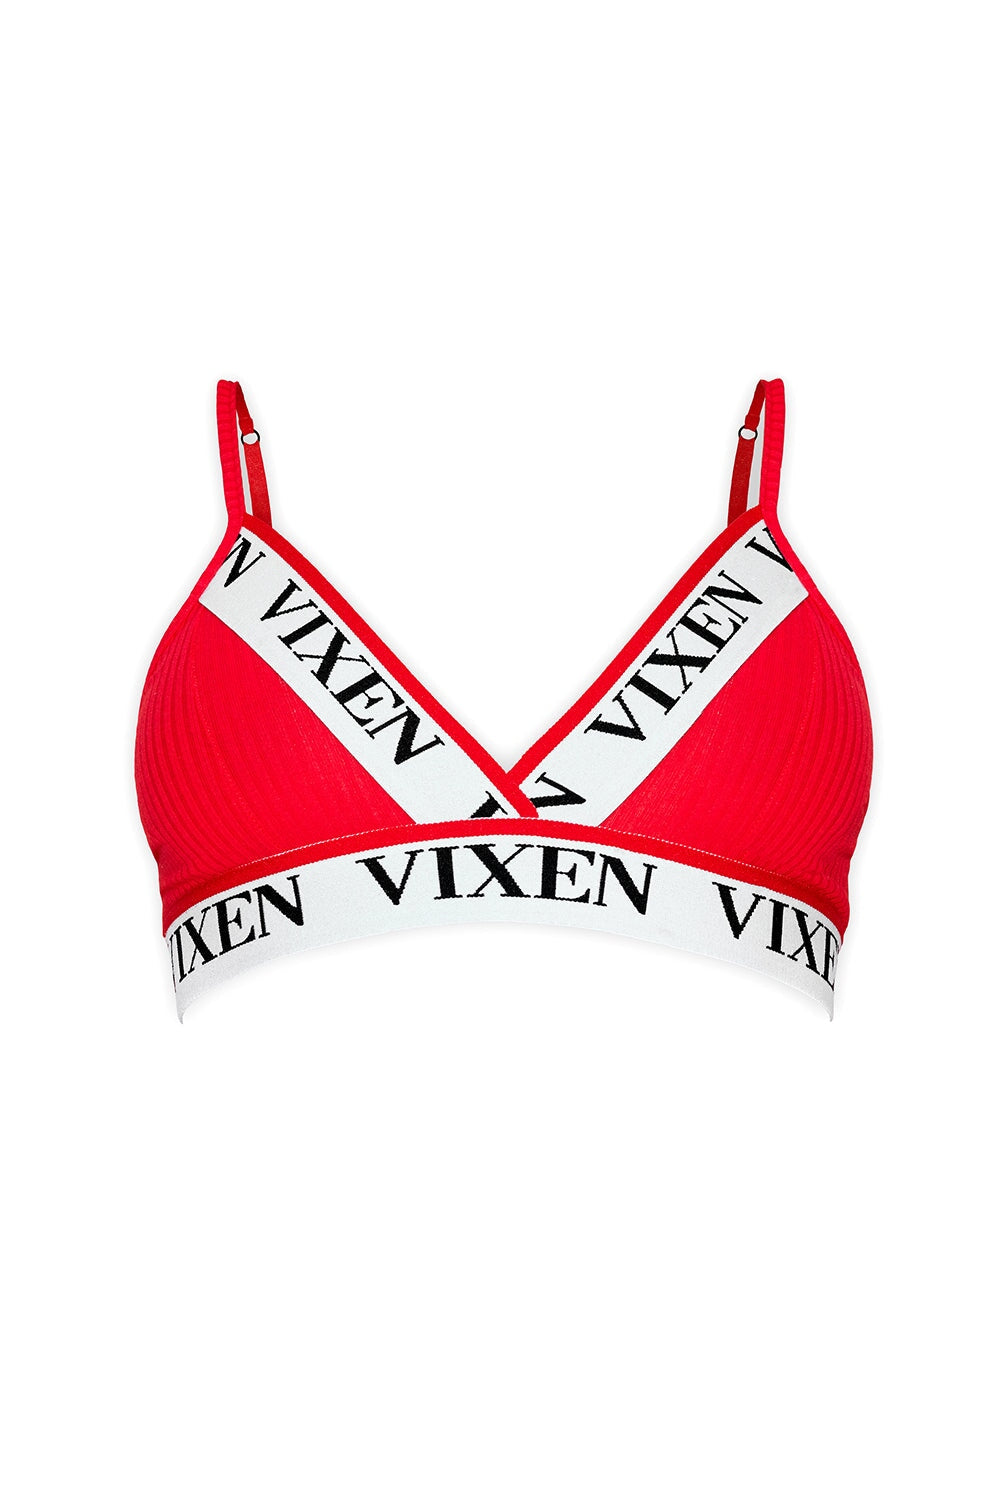 Vixen Icon Bralette Lingerie VIXEN 